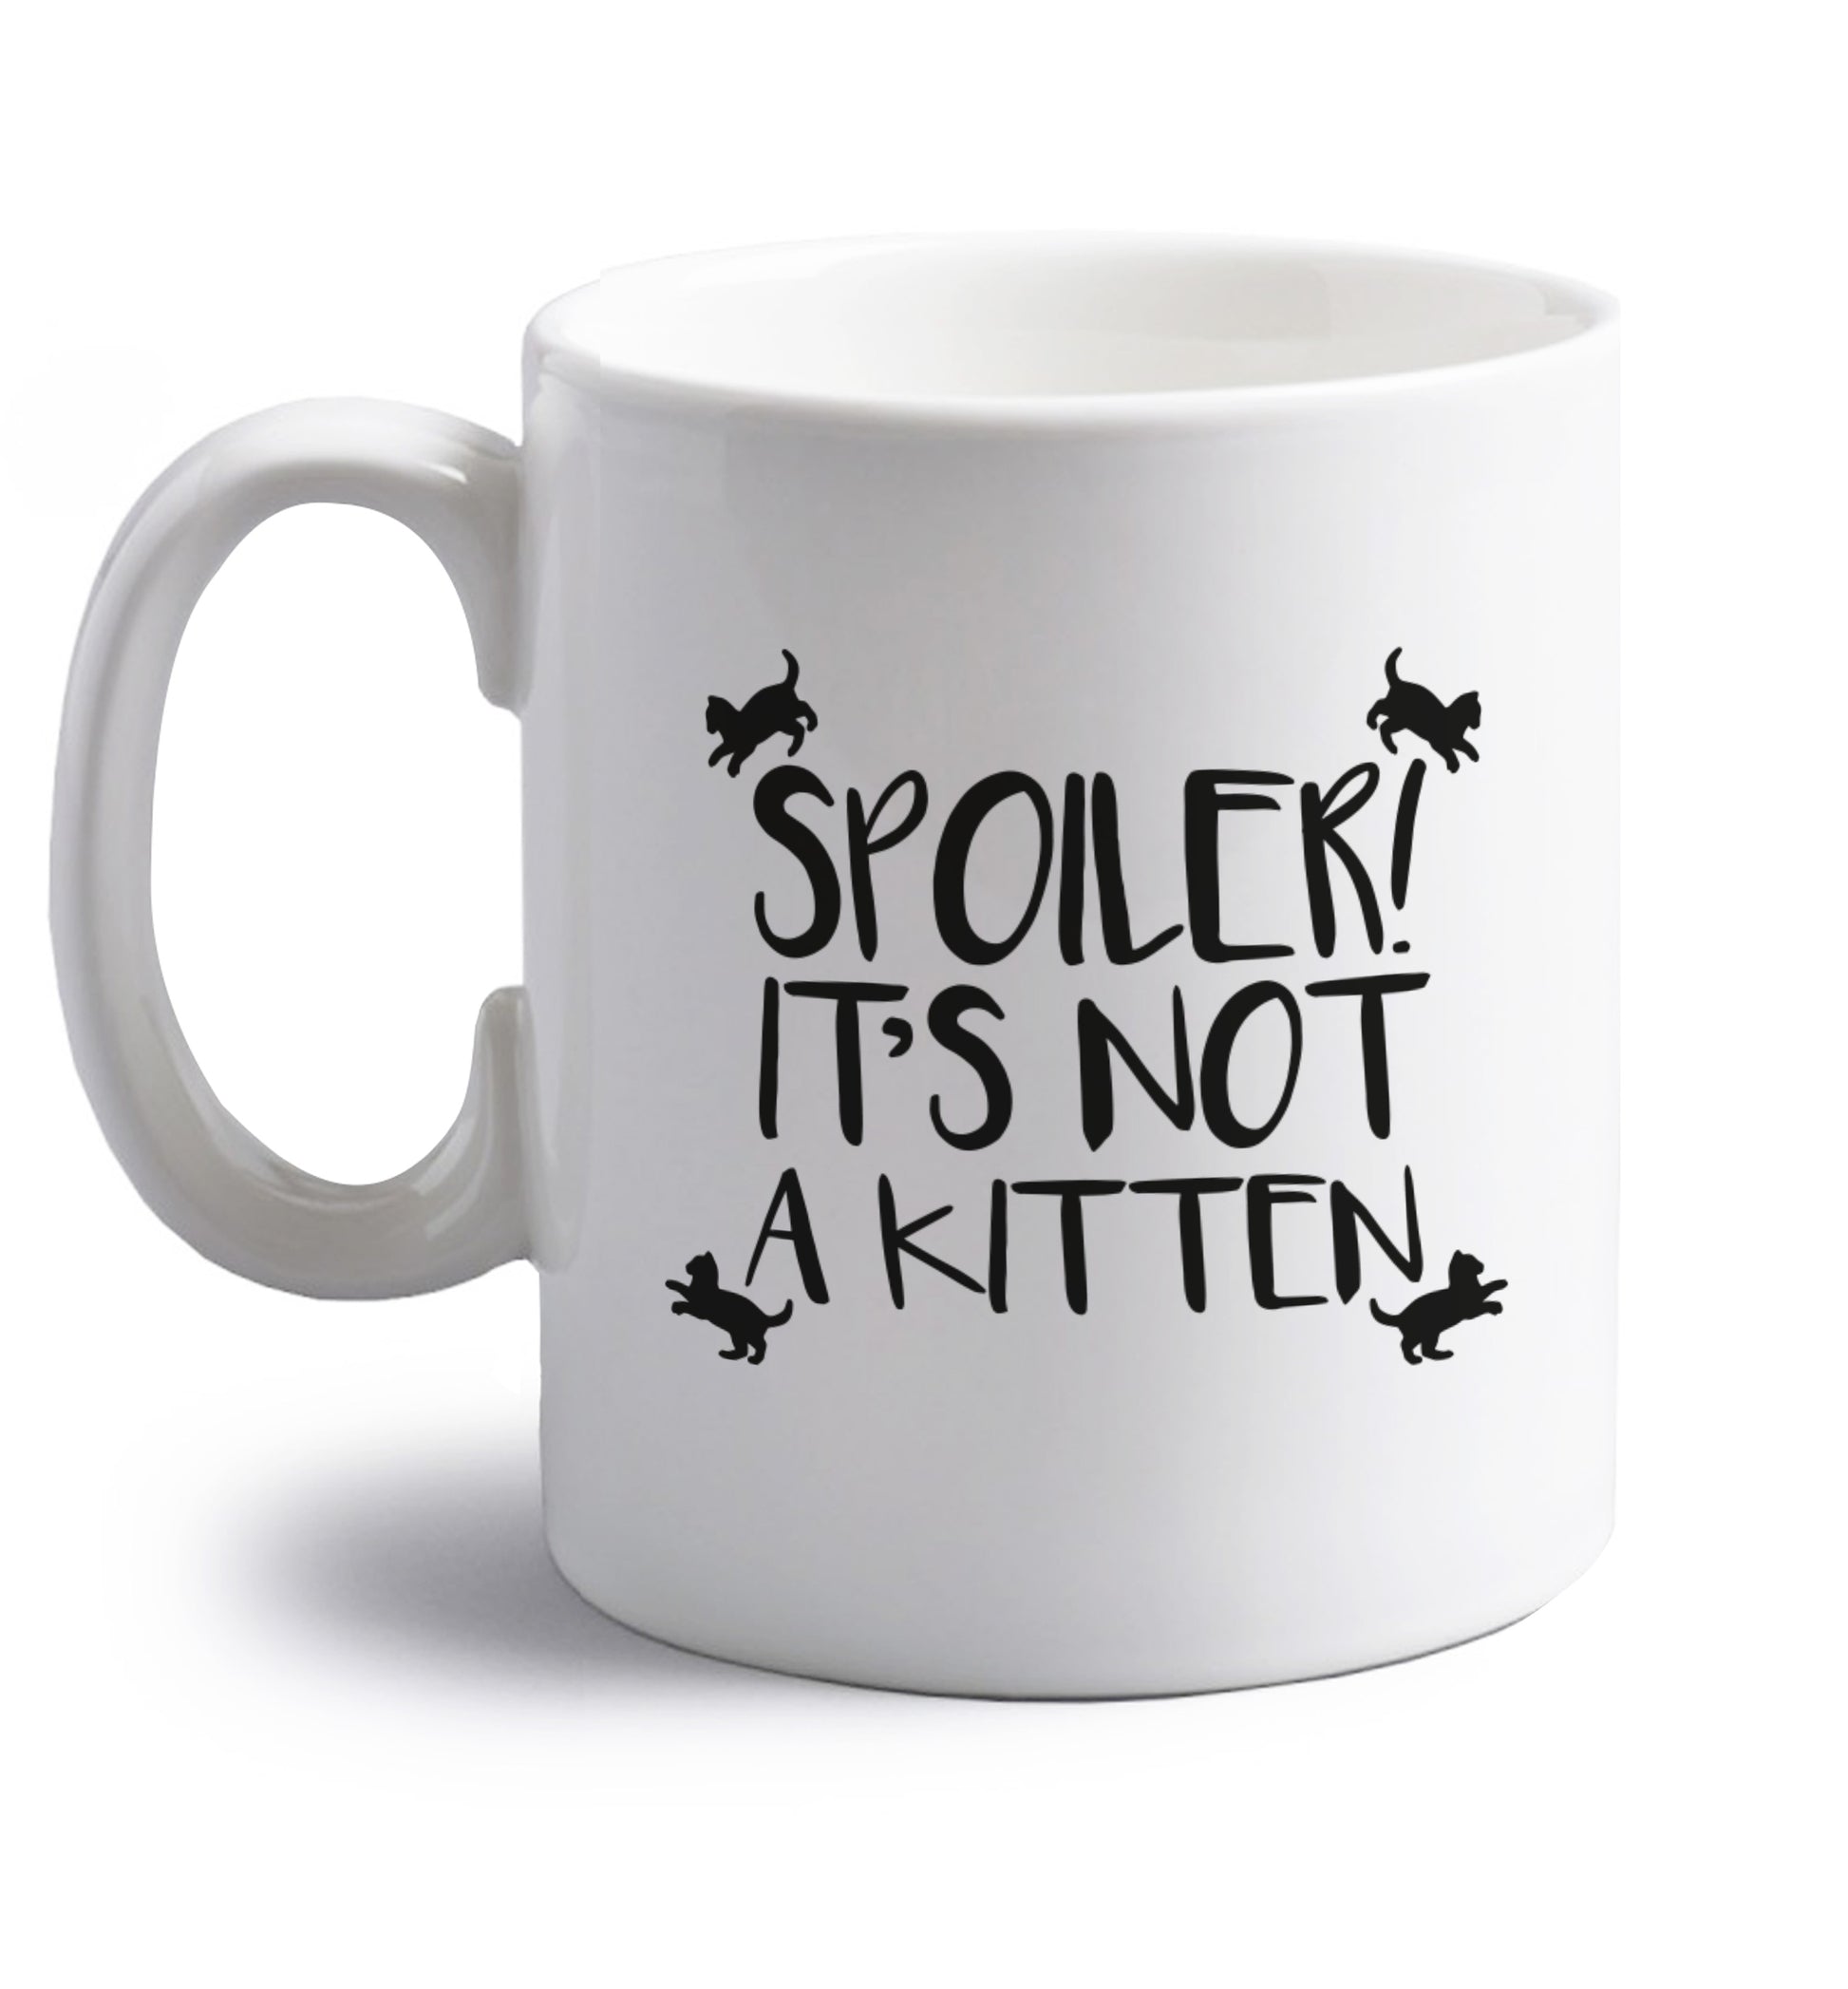 Spoiler it's not a kitten right handed white ceramic mug 